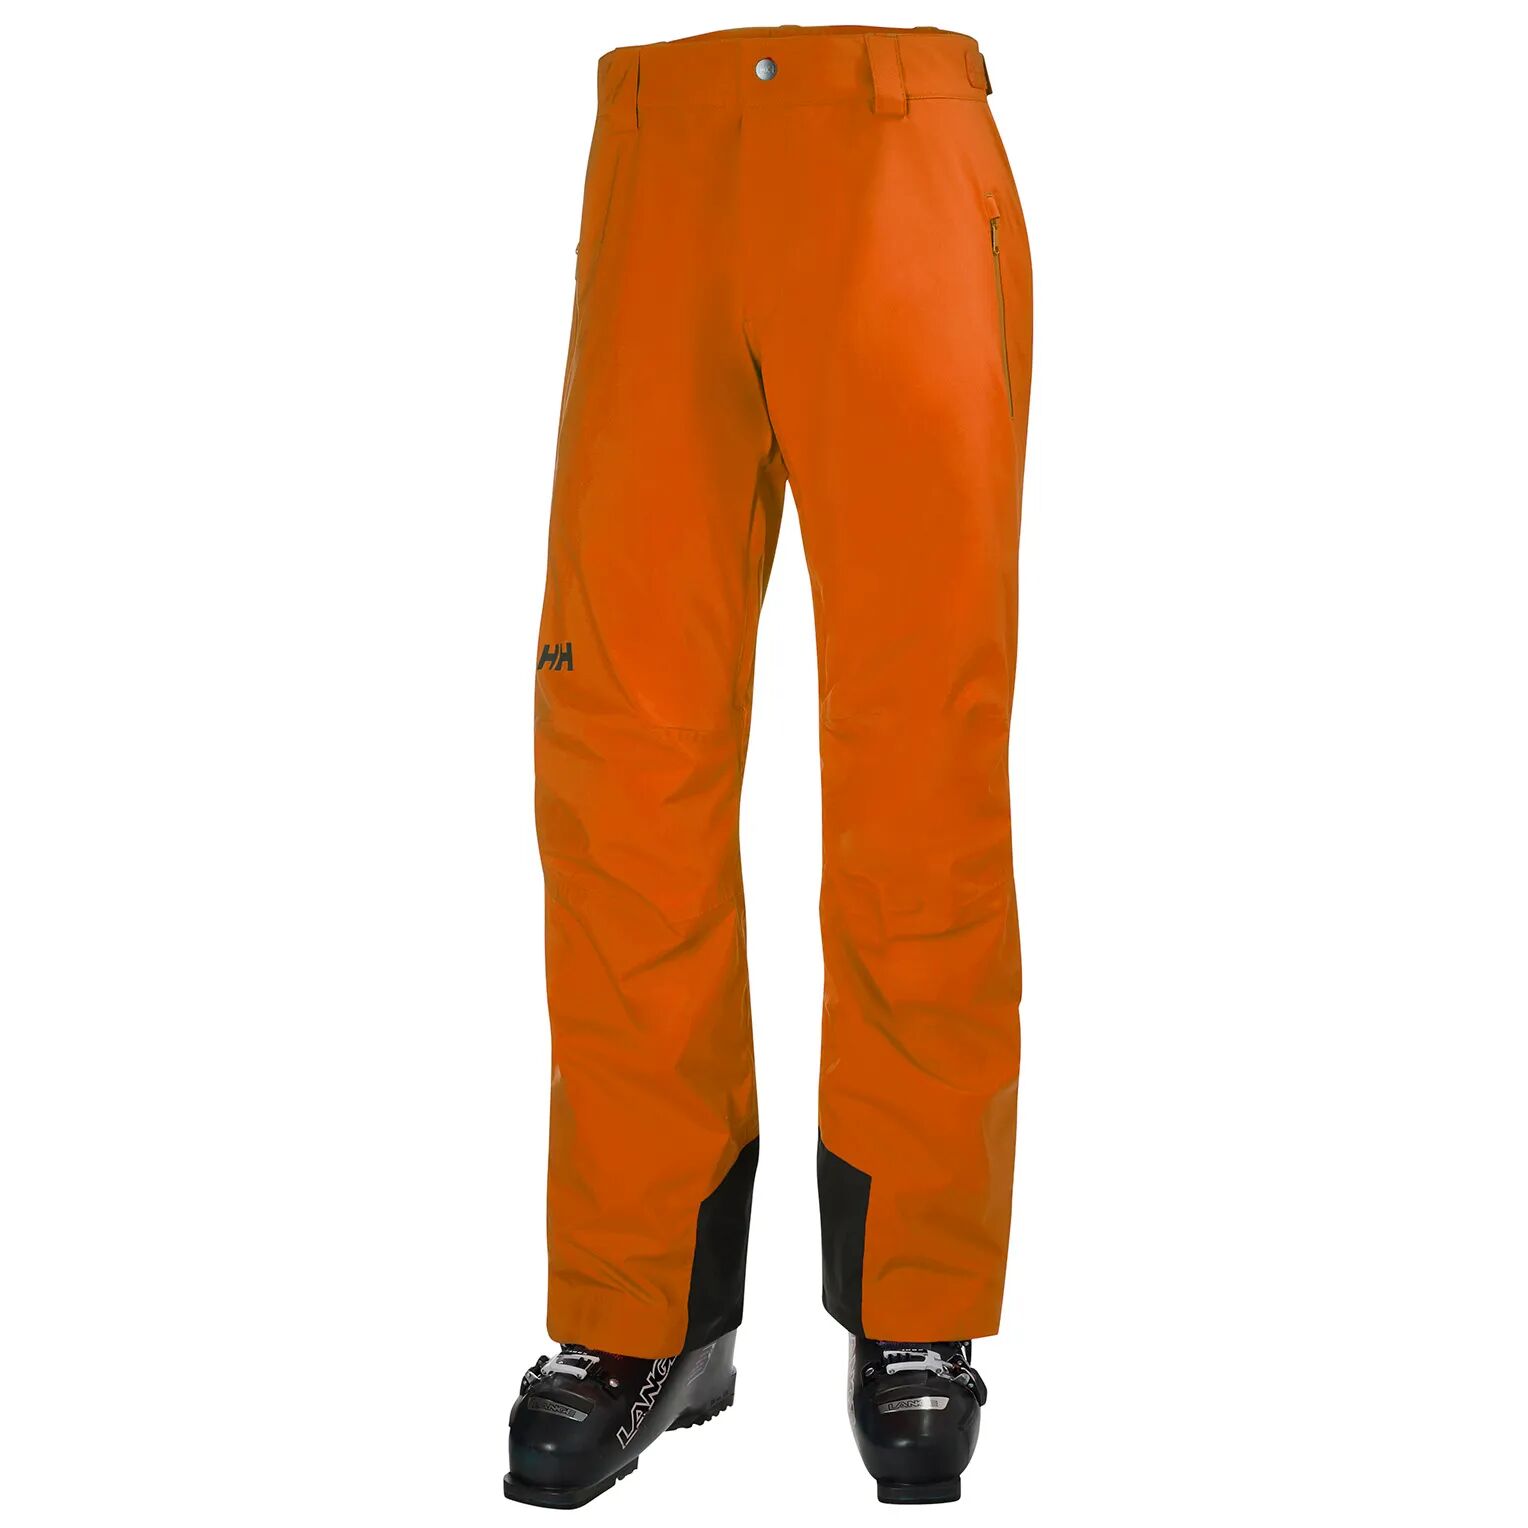 Helly Hansen hombres pantalon de esqui naranja L